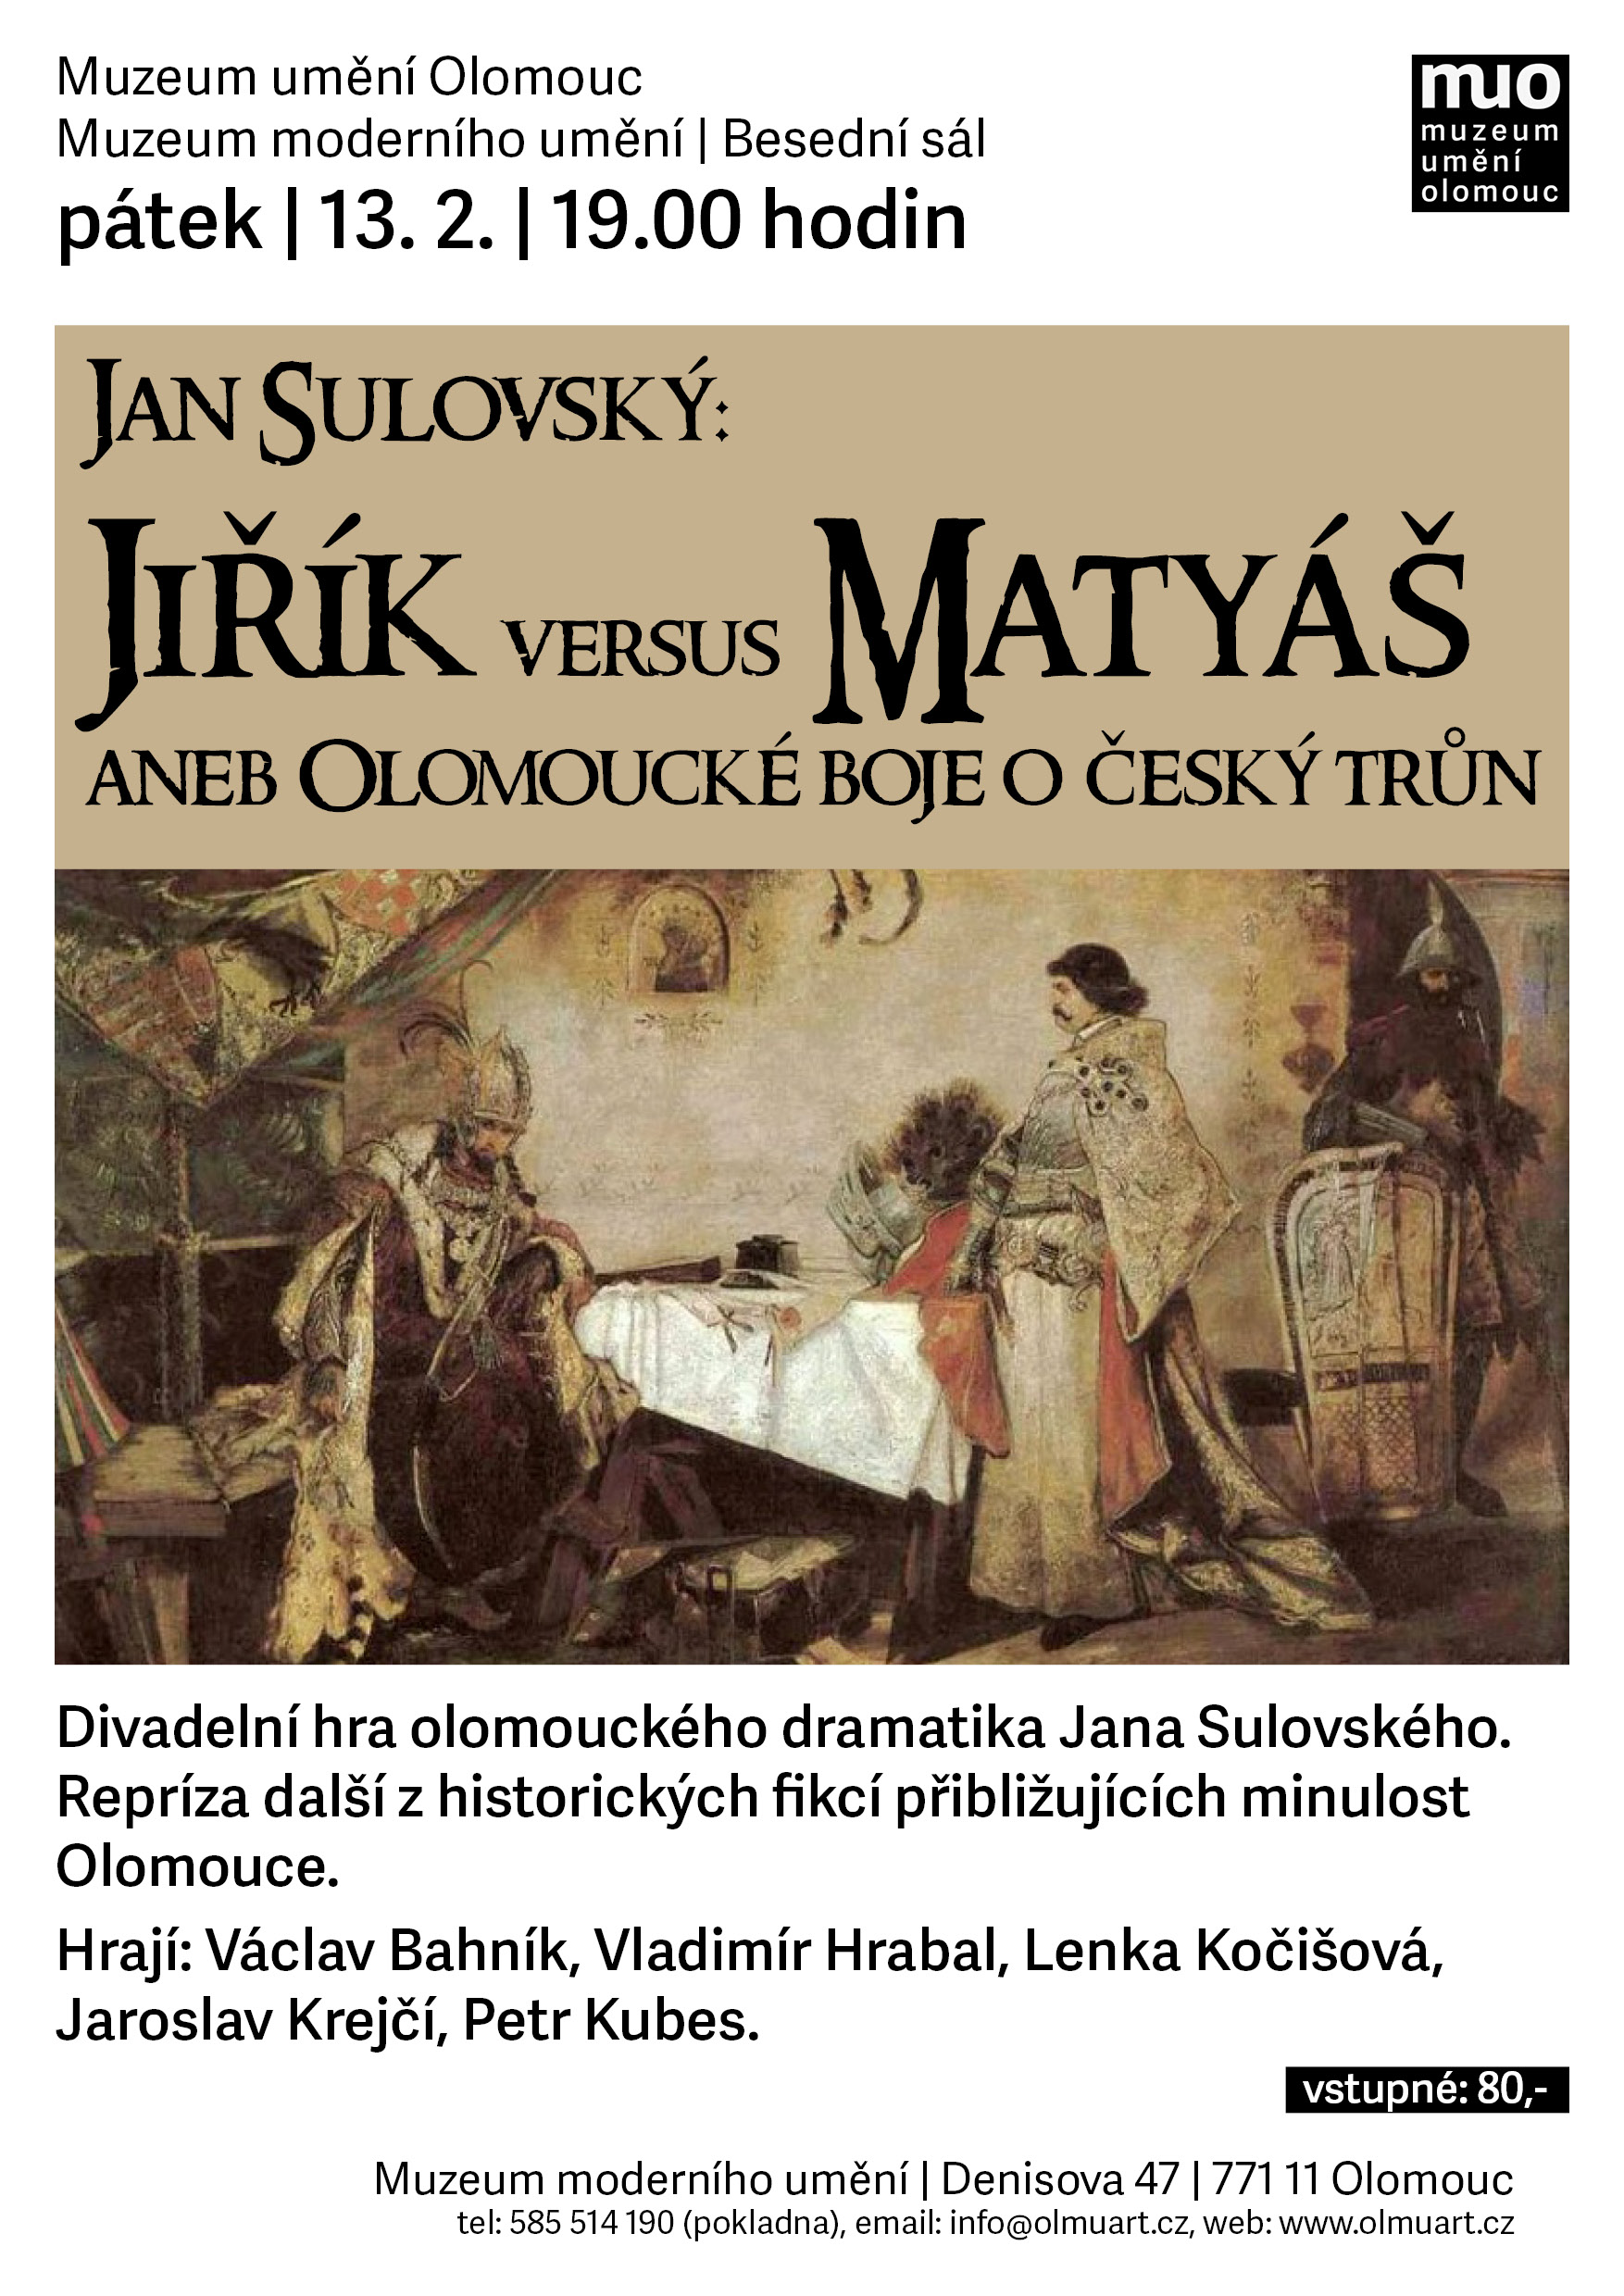 Jiřík versus Matyáš